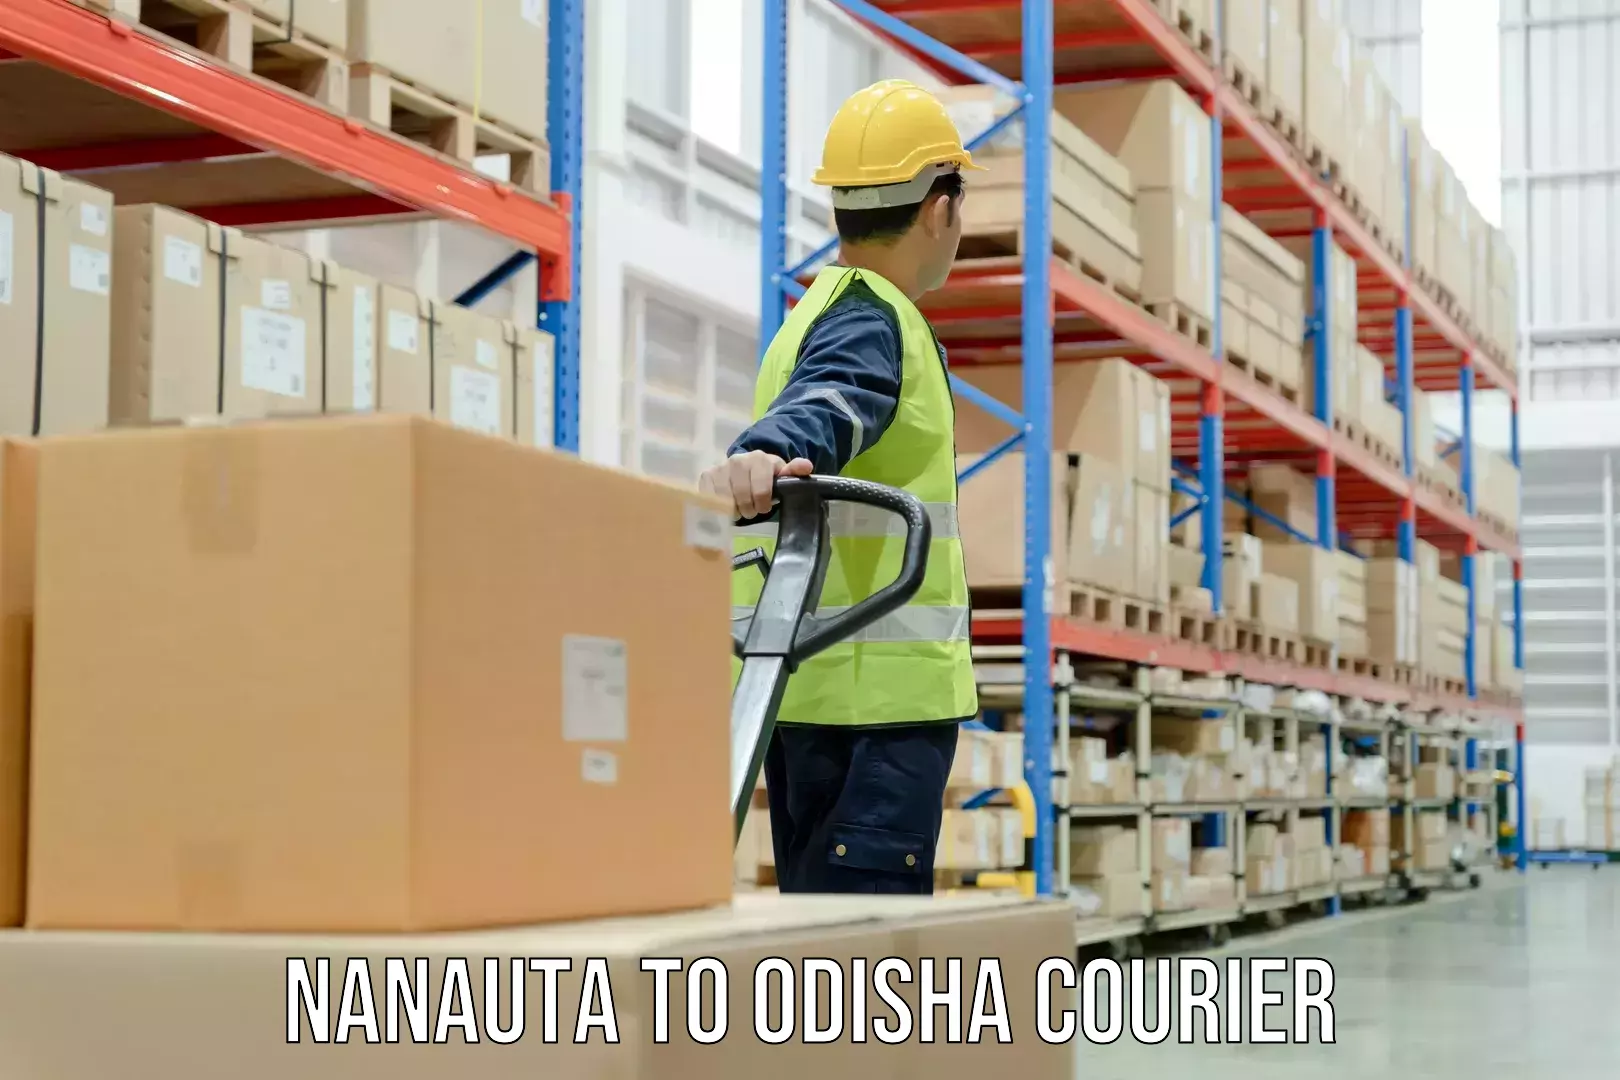 Custom courier solutions Nanauta to Kendujhar